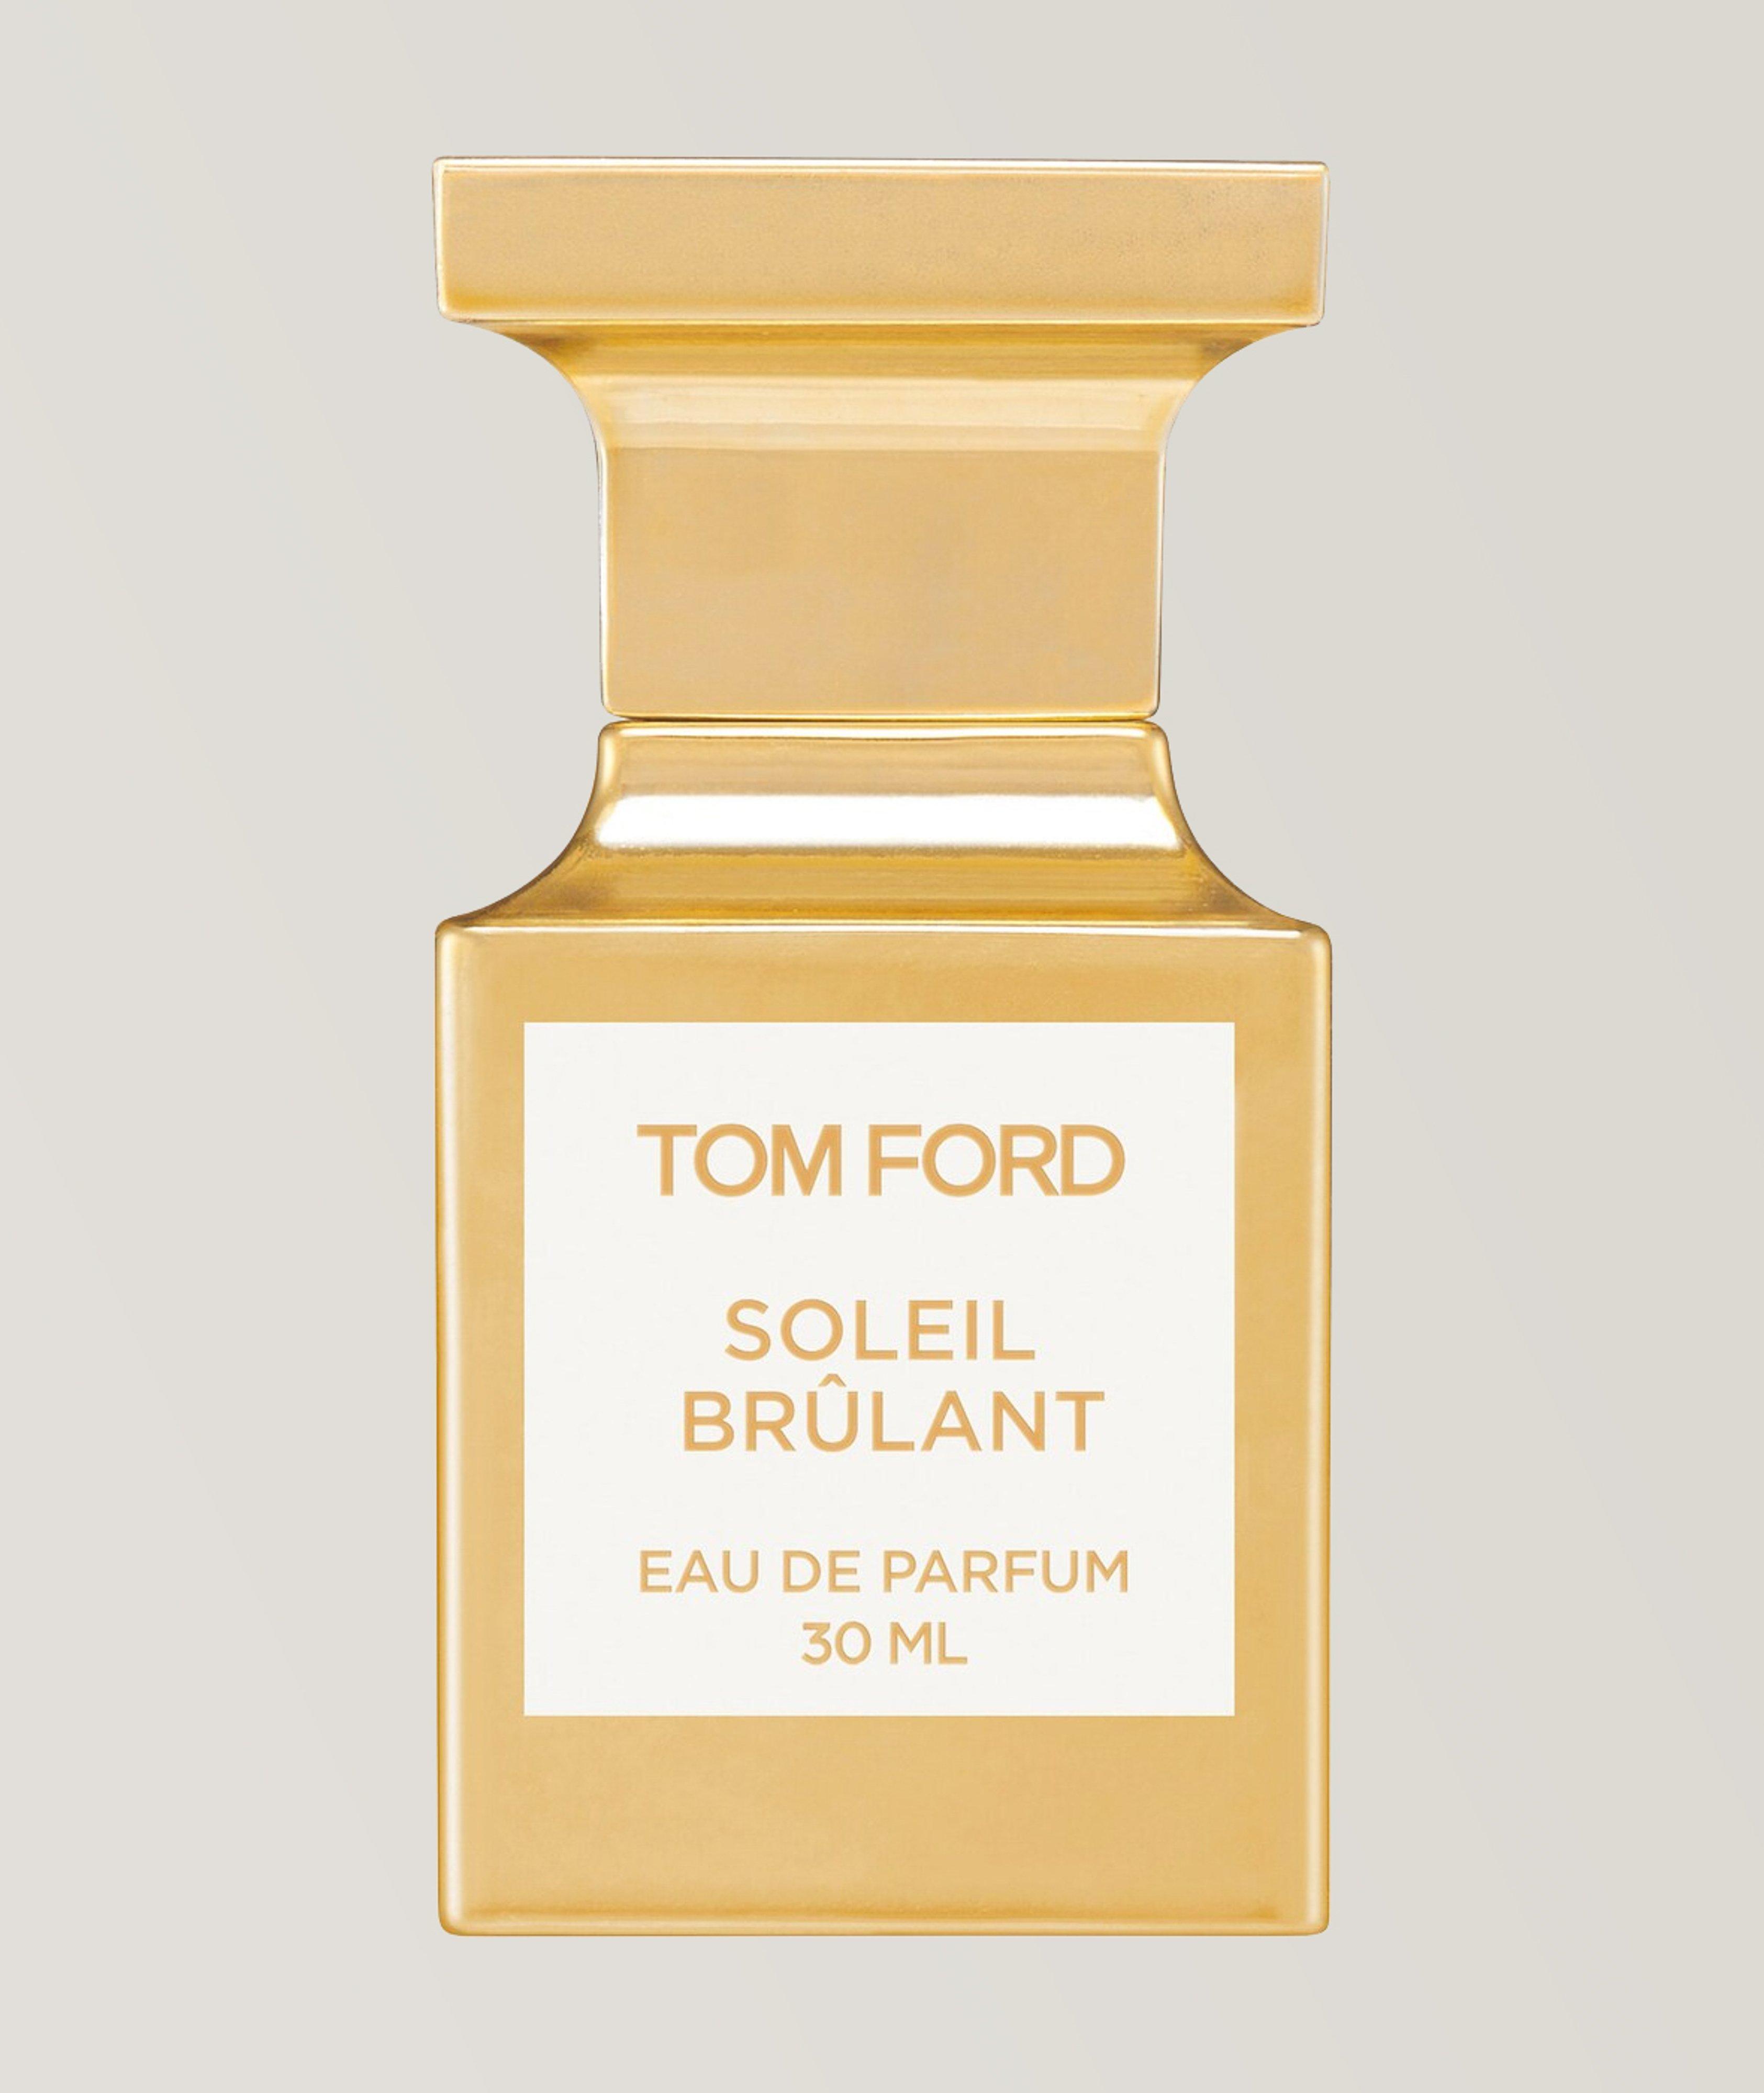 Eau de parfum Soleil brulant (30 ml) image 0